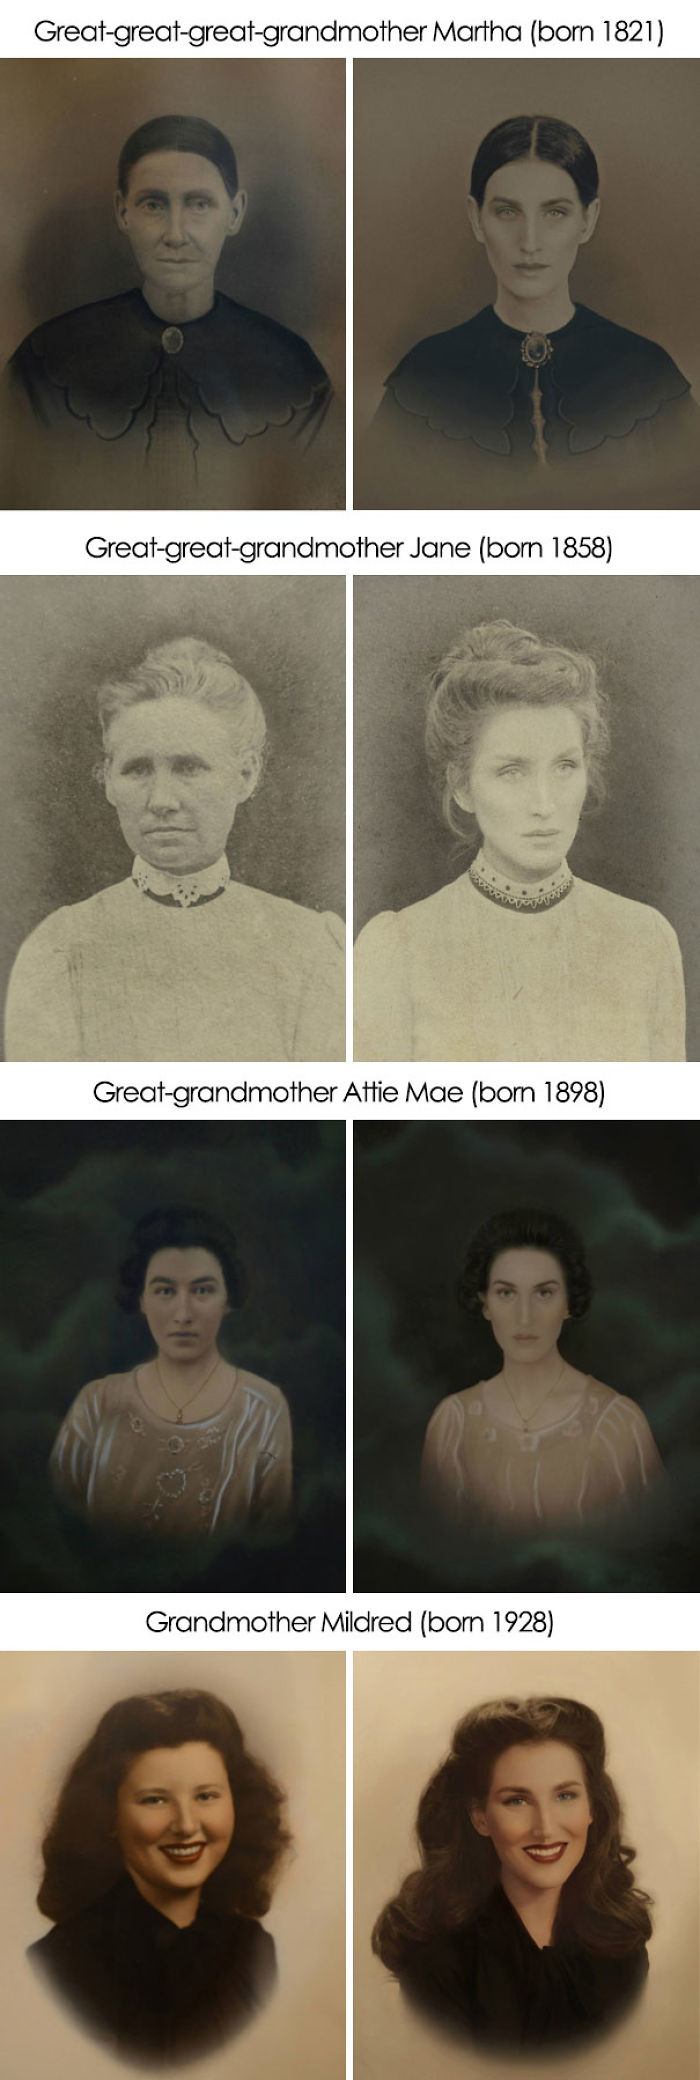 He recreado estas fotos de mis ancestros, retrocediendo hasta 200 años